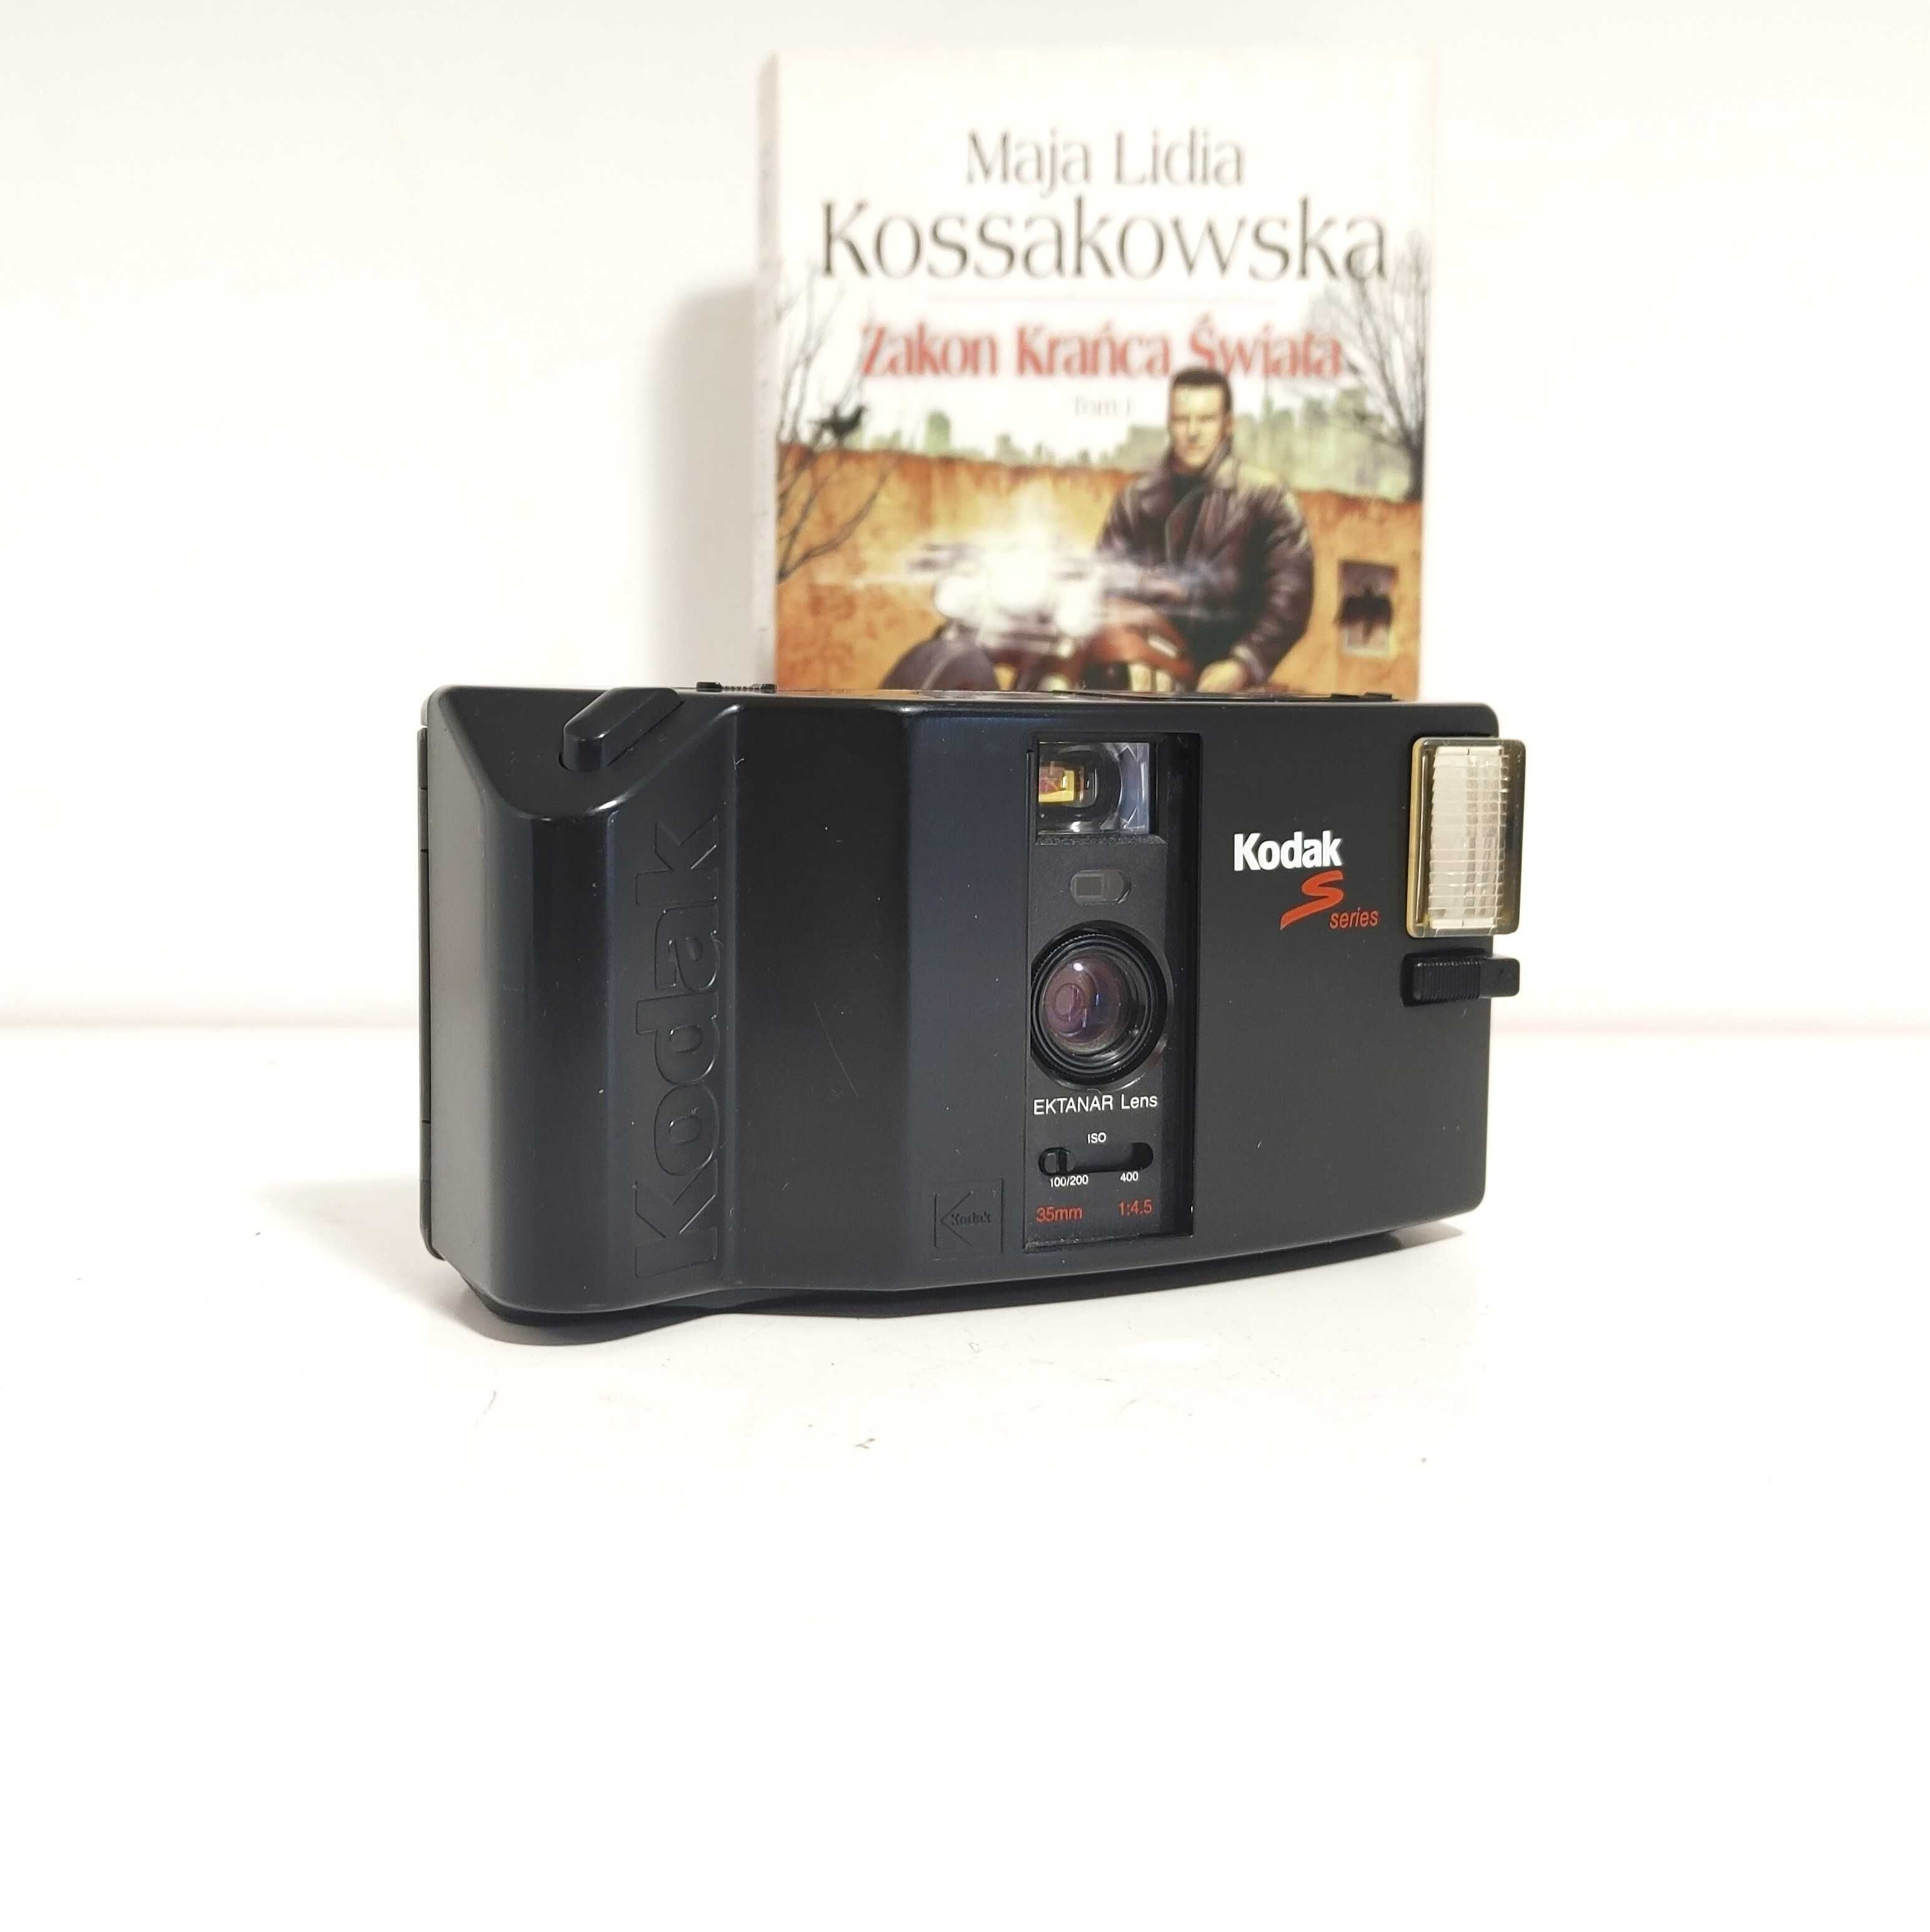 Vintage Kodak S300 MD Kompaktowy aparat analogowy z lat 80 tych XX w